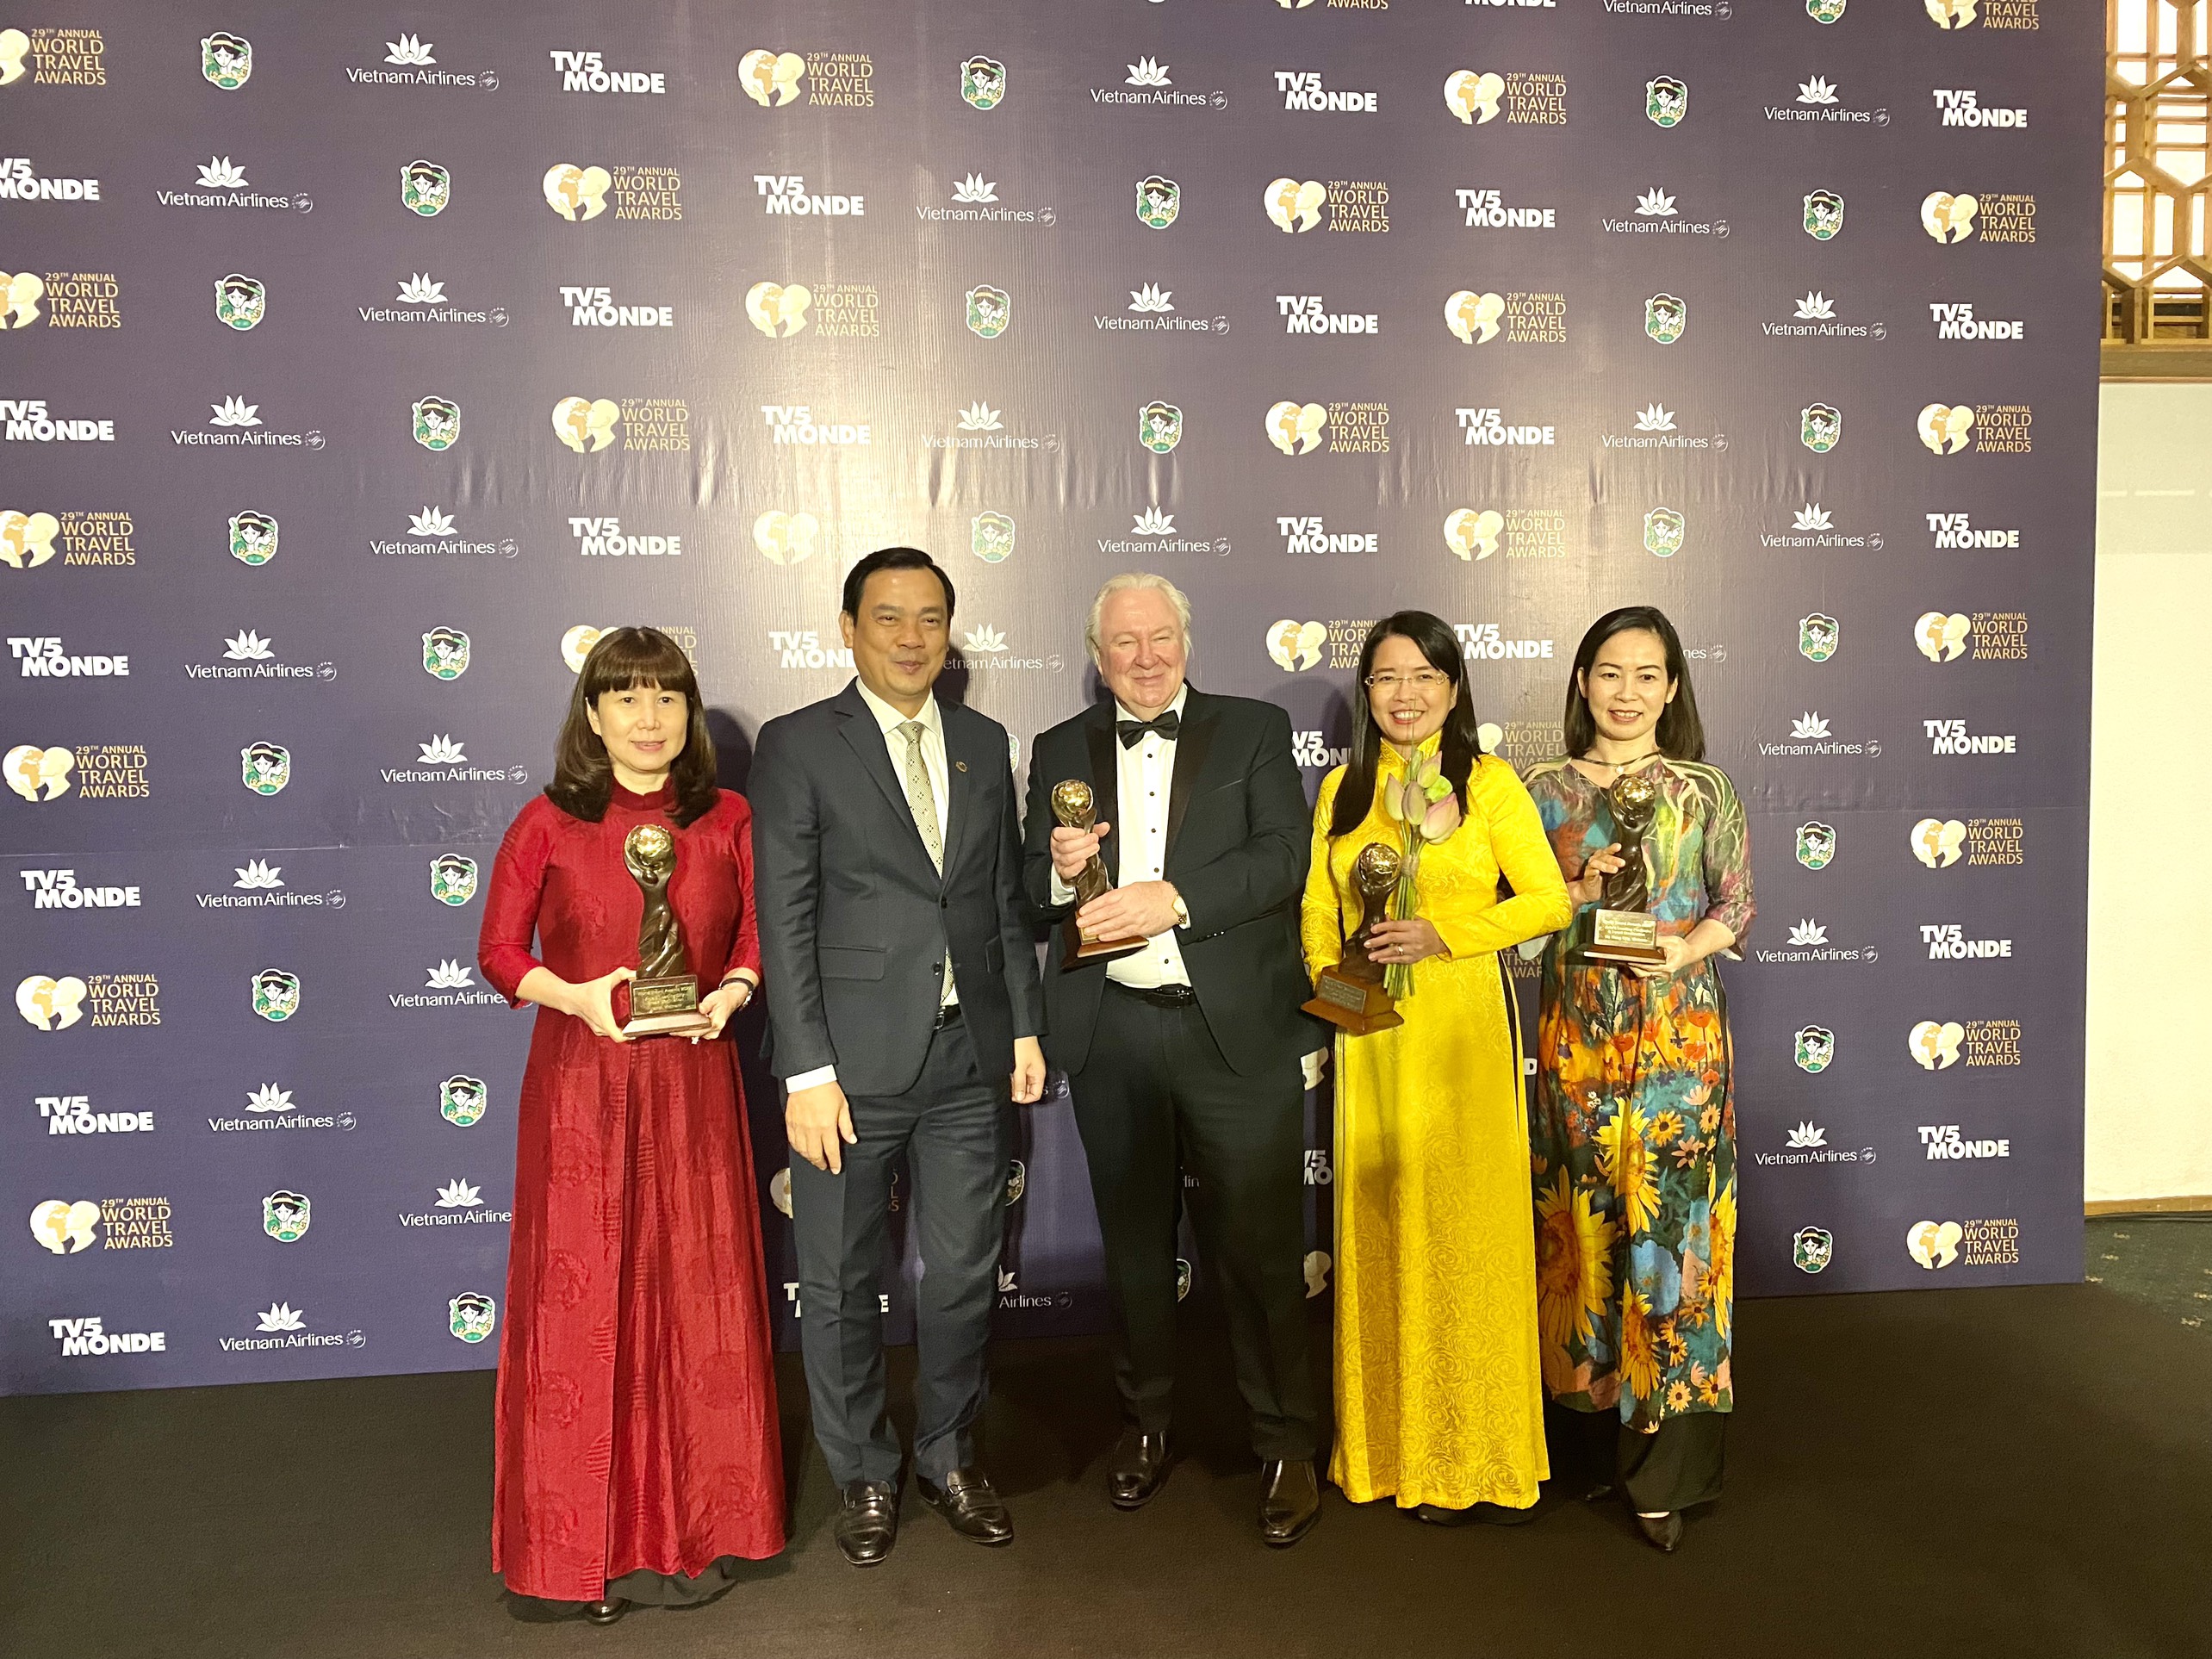 Giải thưởng không chỉ là niềm tự hào mà còn là cơ hội cho du lịch Thủ đô, khẳng định vị thế, hình ảnh và thương hiệu du lịch thành phố Hà Nội trên trường quốc tế.